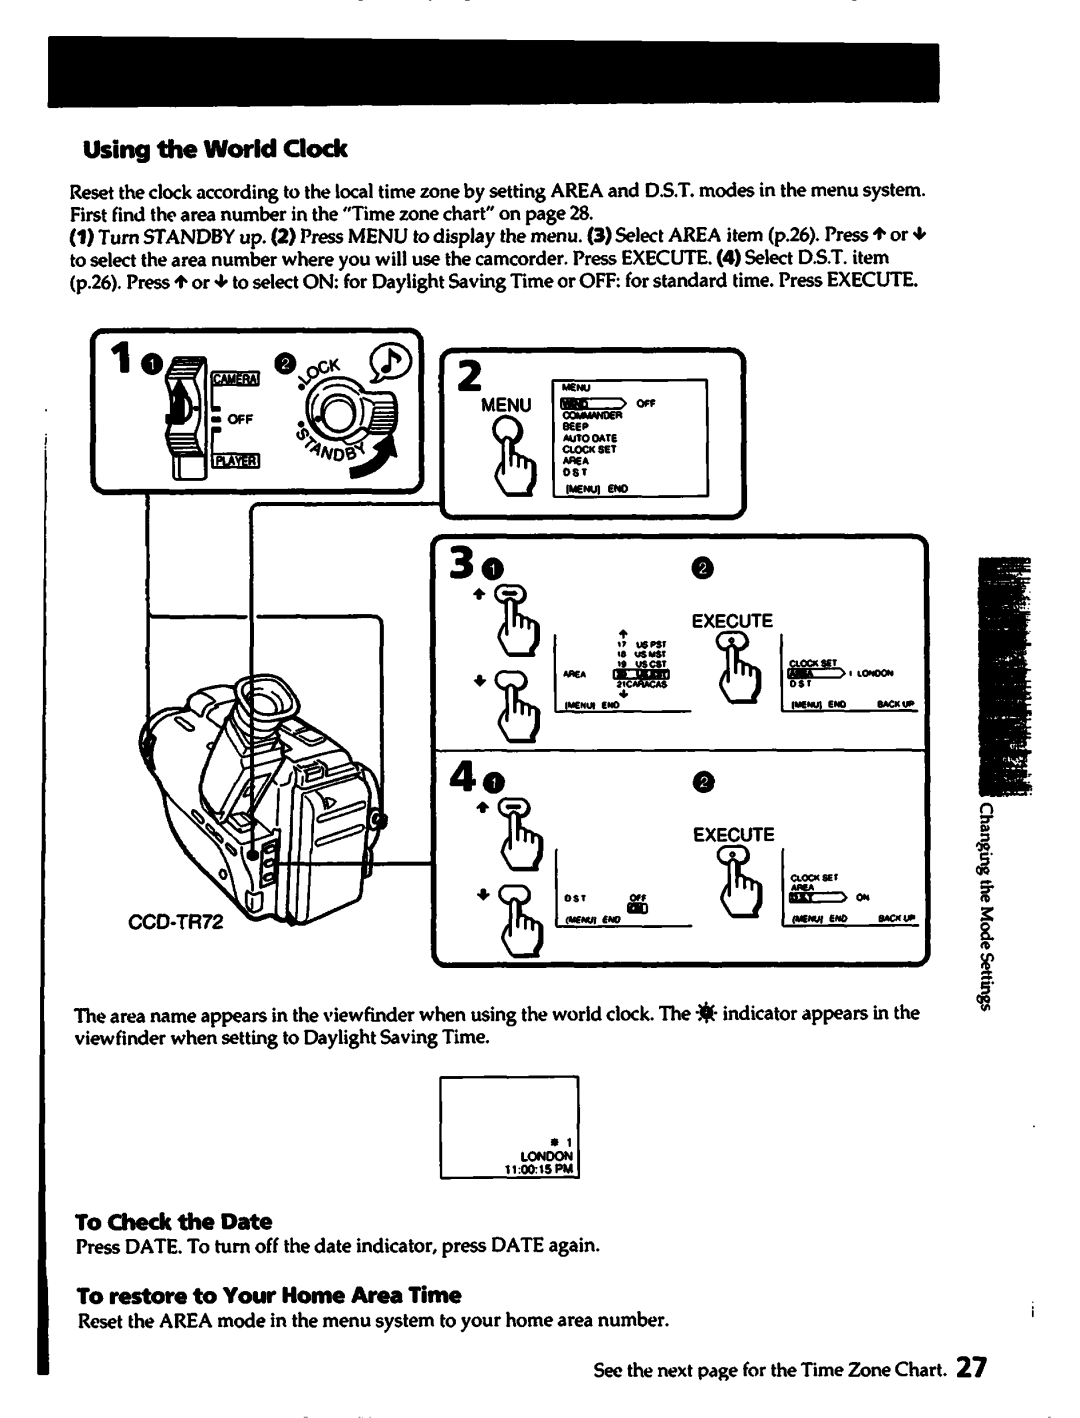 Sony CCD-TR72, CCD-TR82, CCD-TR70, CCD-TR80, CCD-TR42 manual 